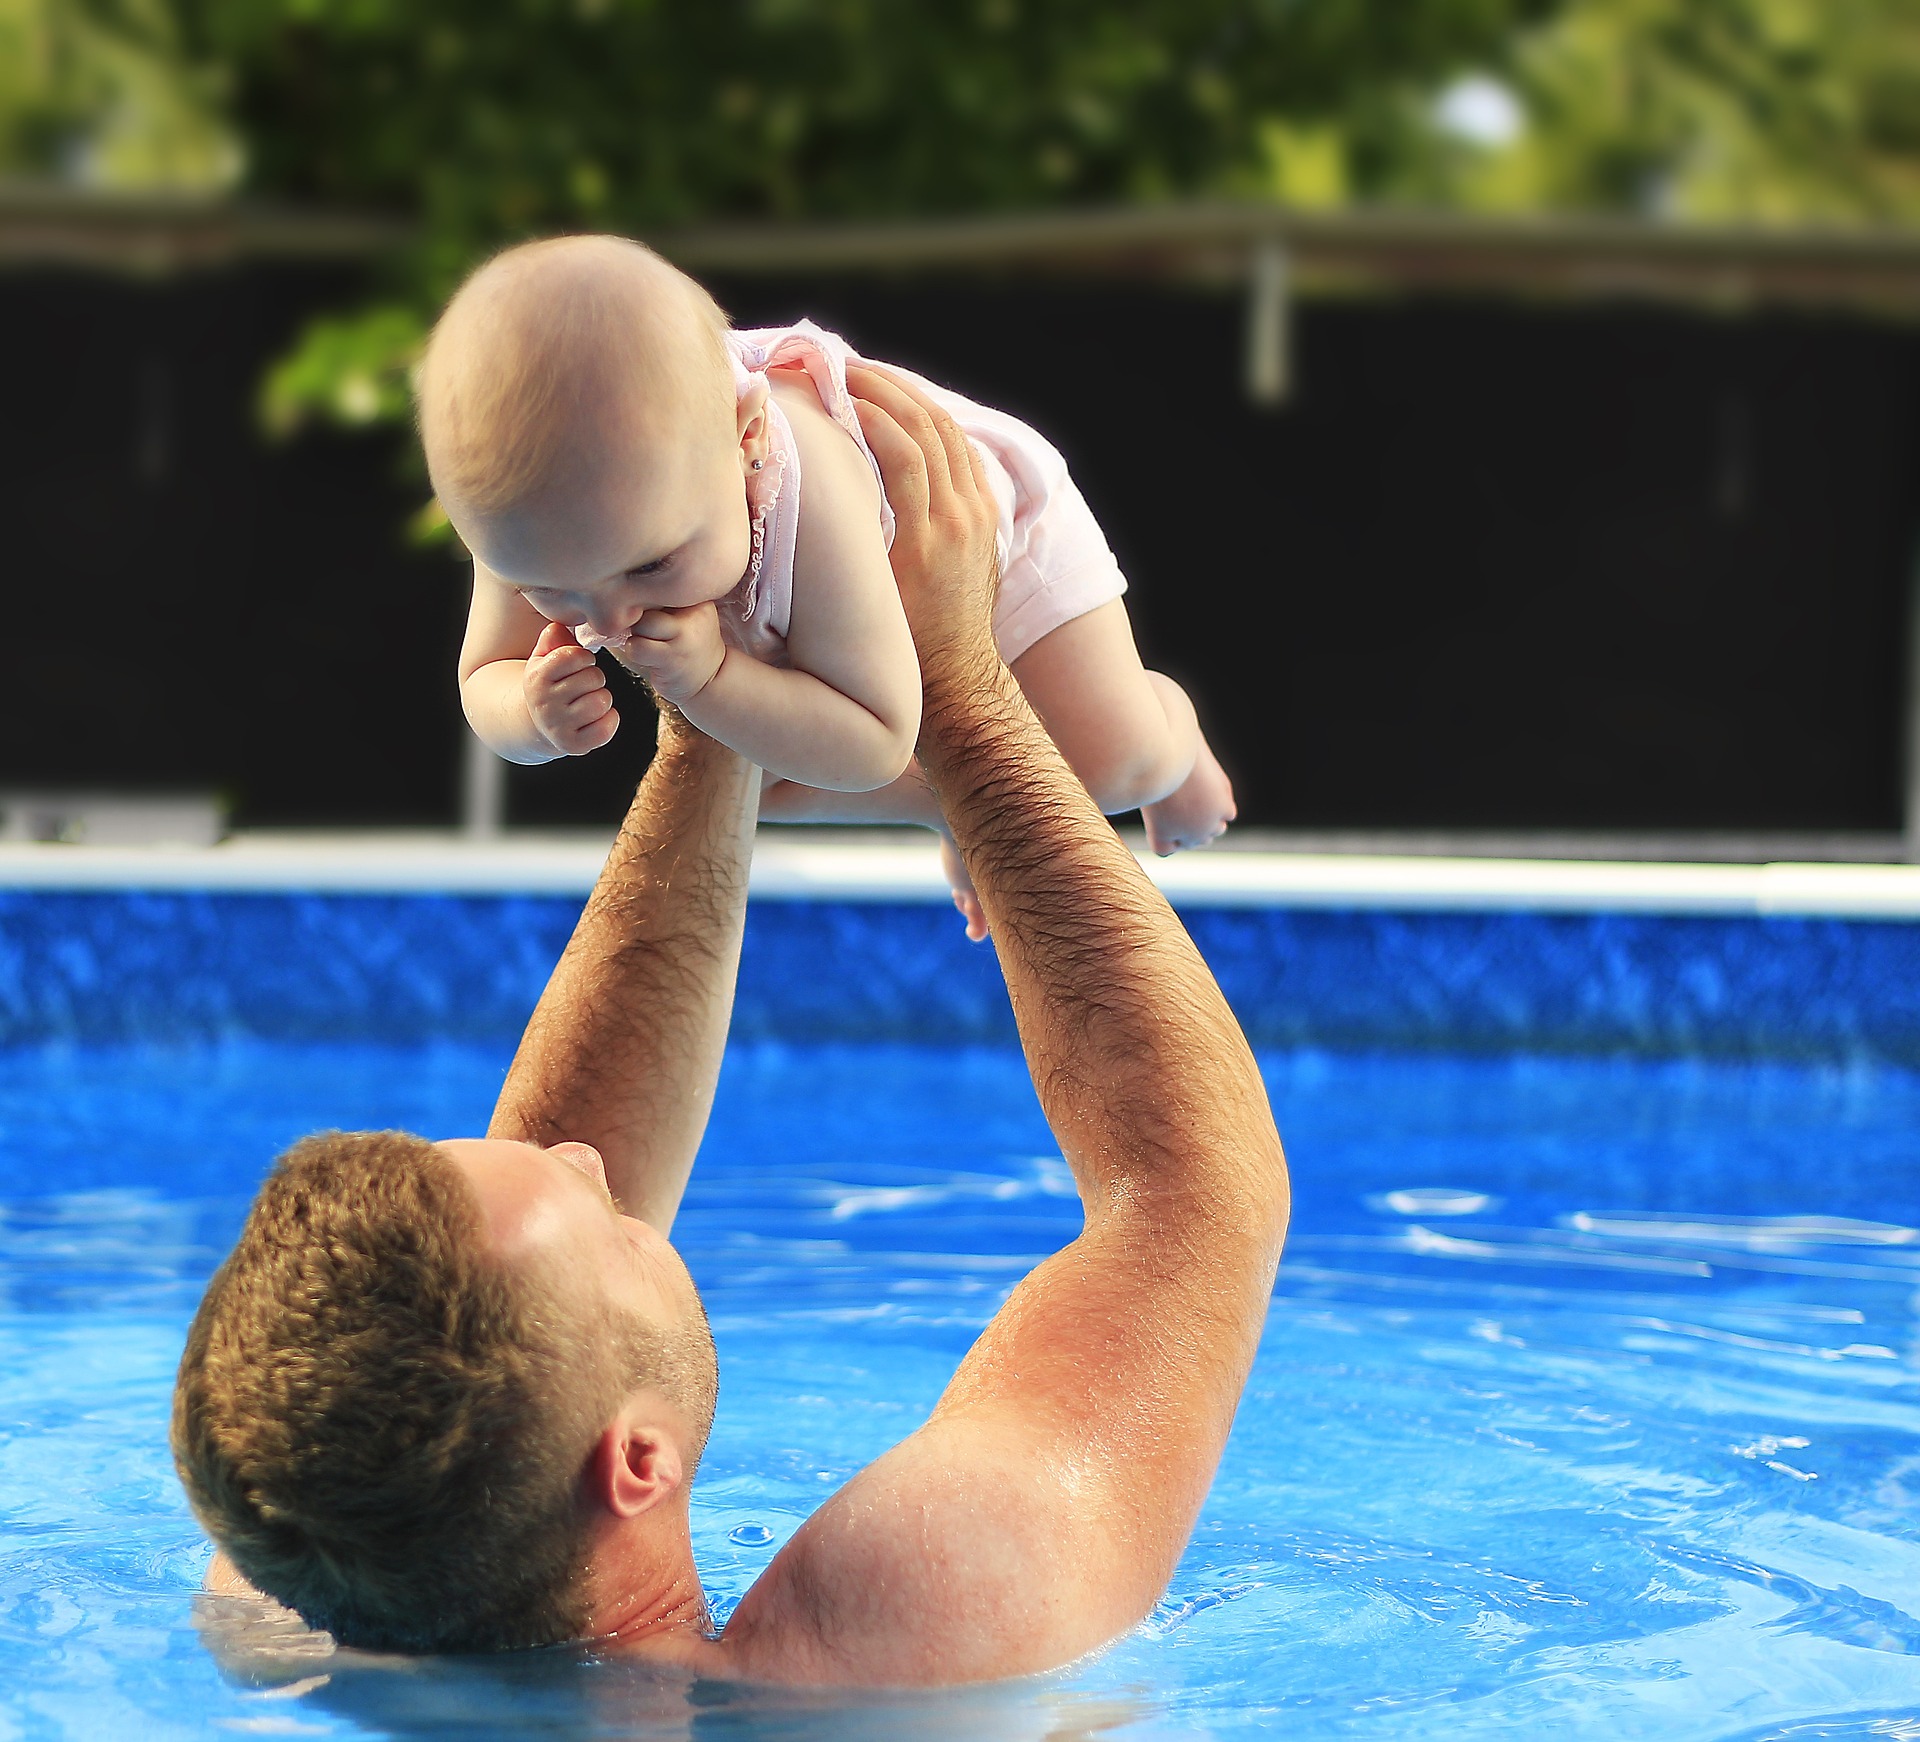 Padre jugando con bebé en piscina